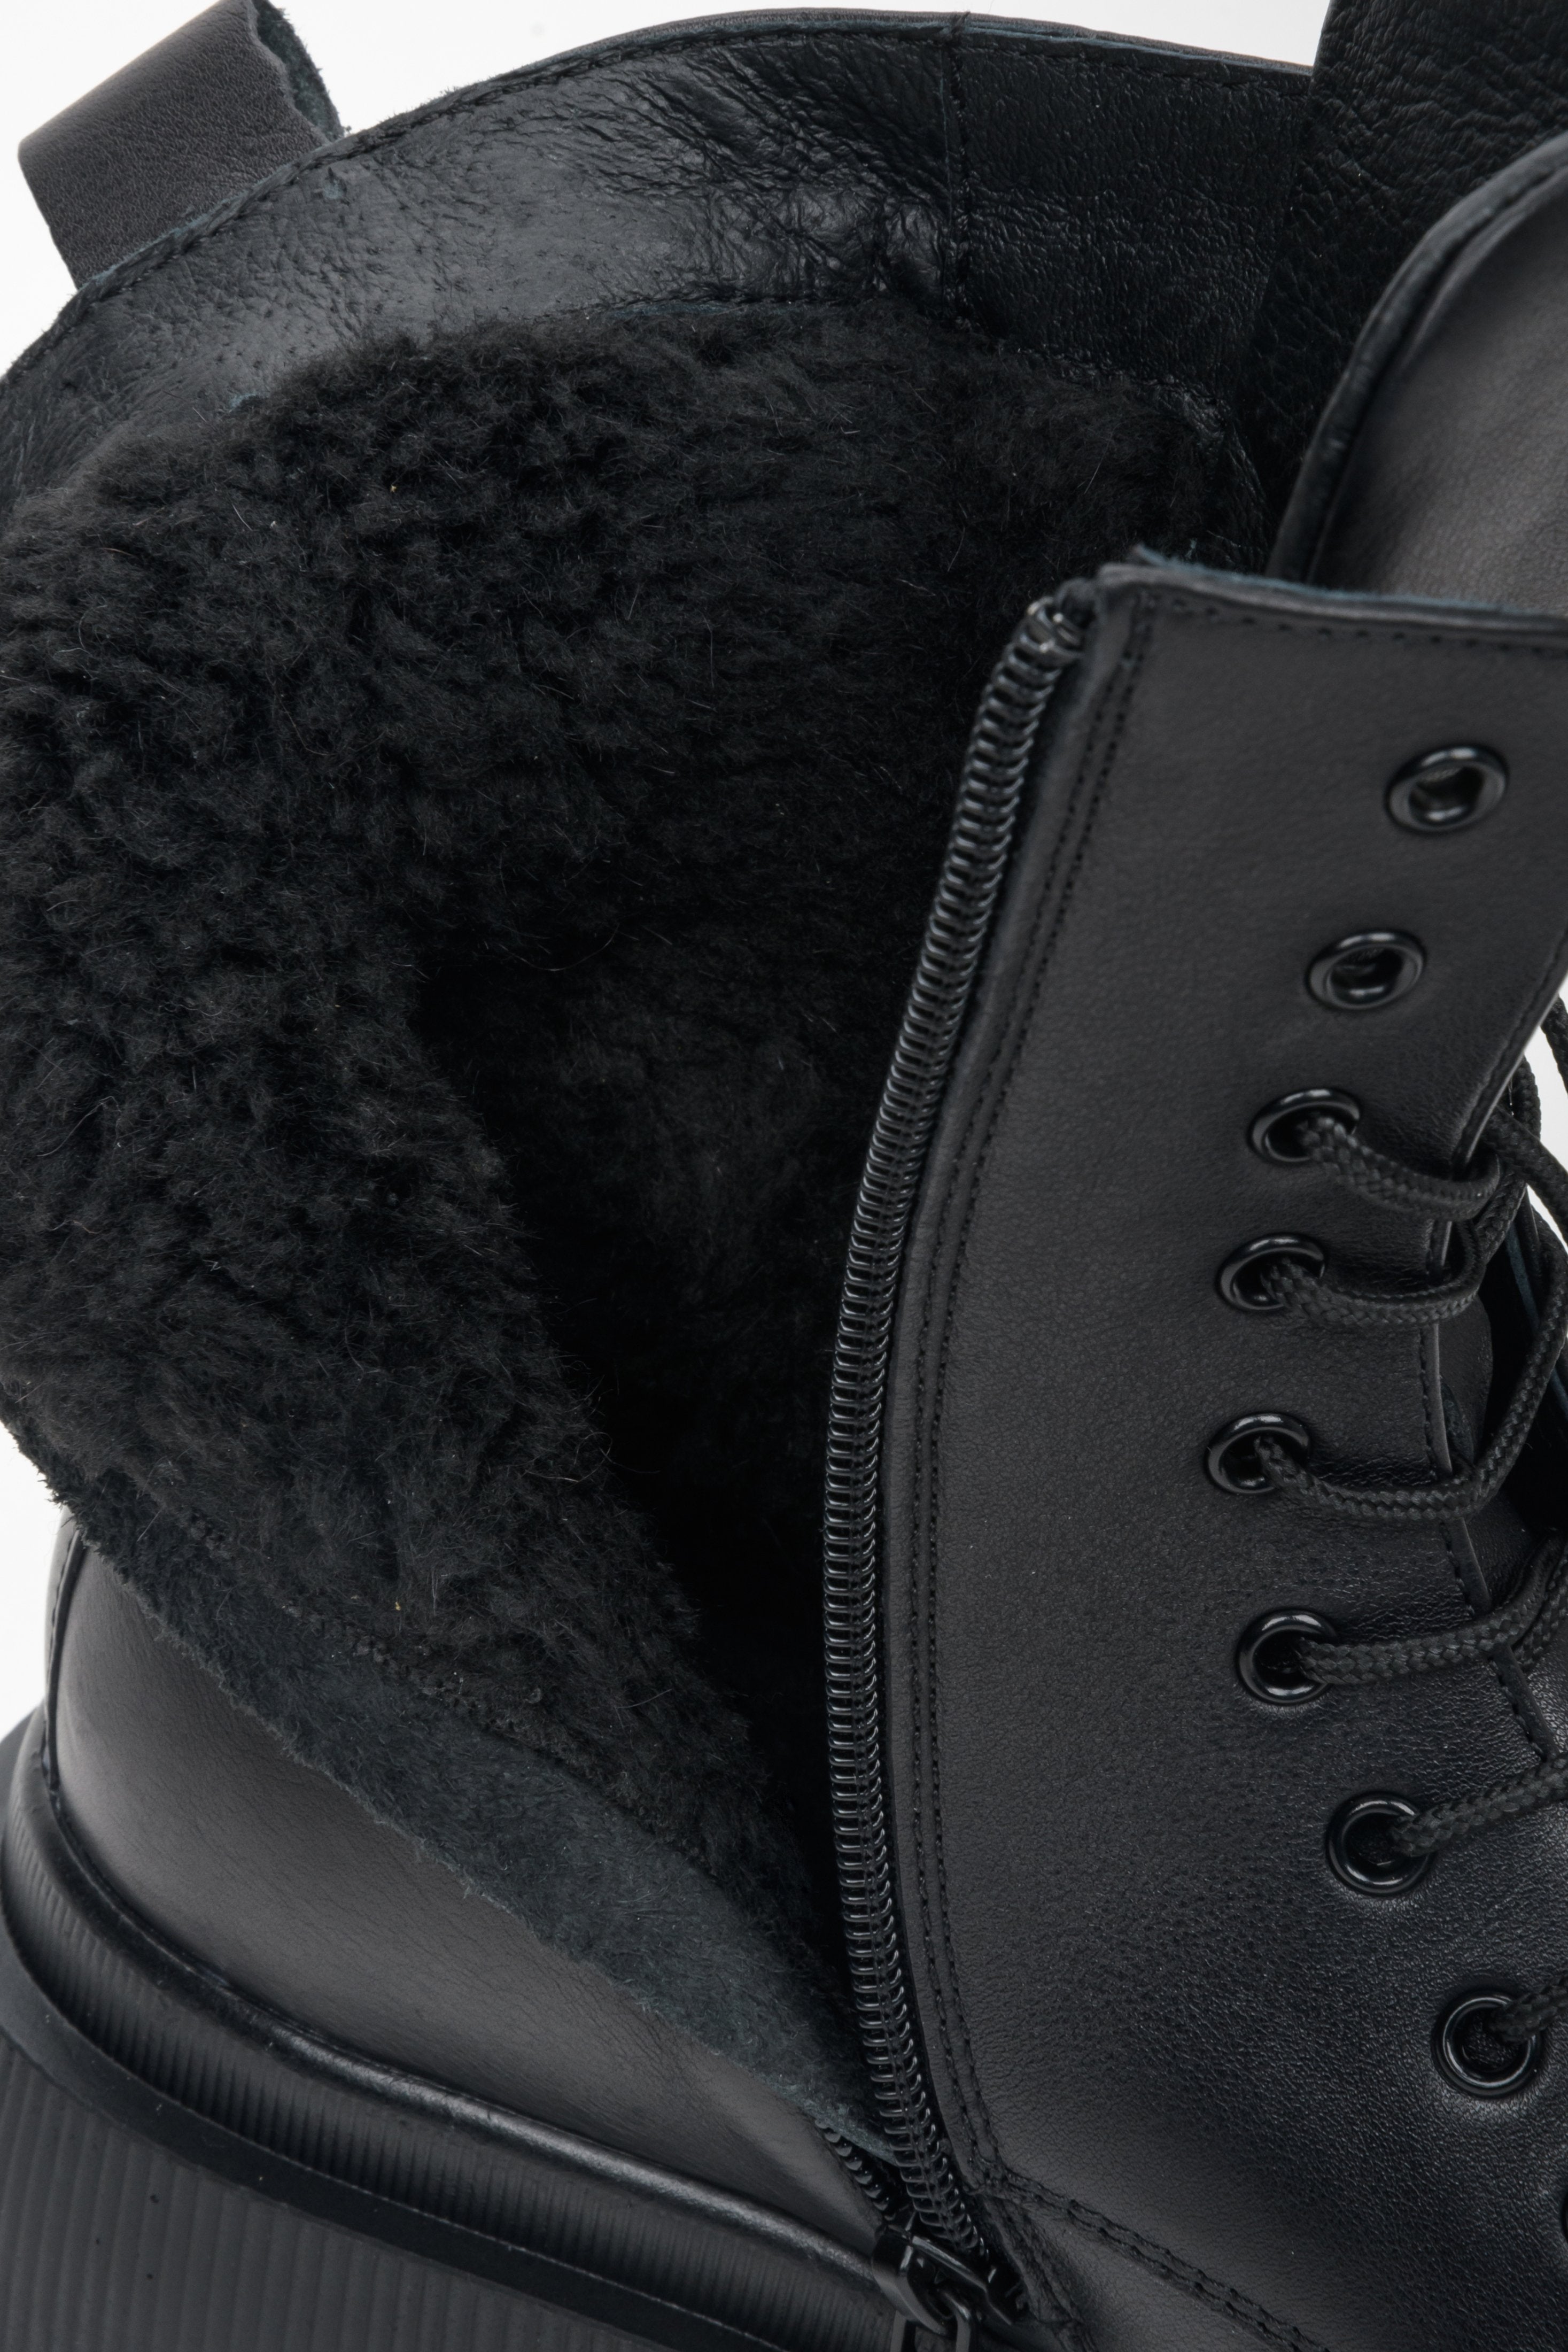 Damskie botki zimowe ze skóry naturalnej w kolorze czarnym ze sznurowaniem i suwakiem marki Estro - zbliżenie na wypełnienie buta.